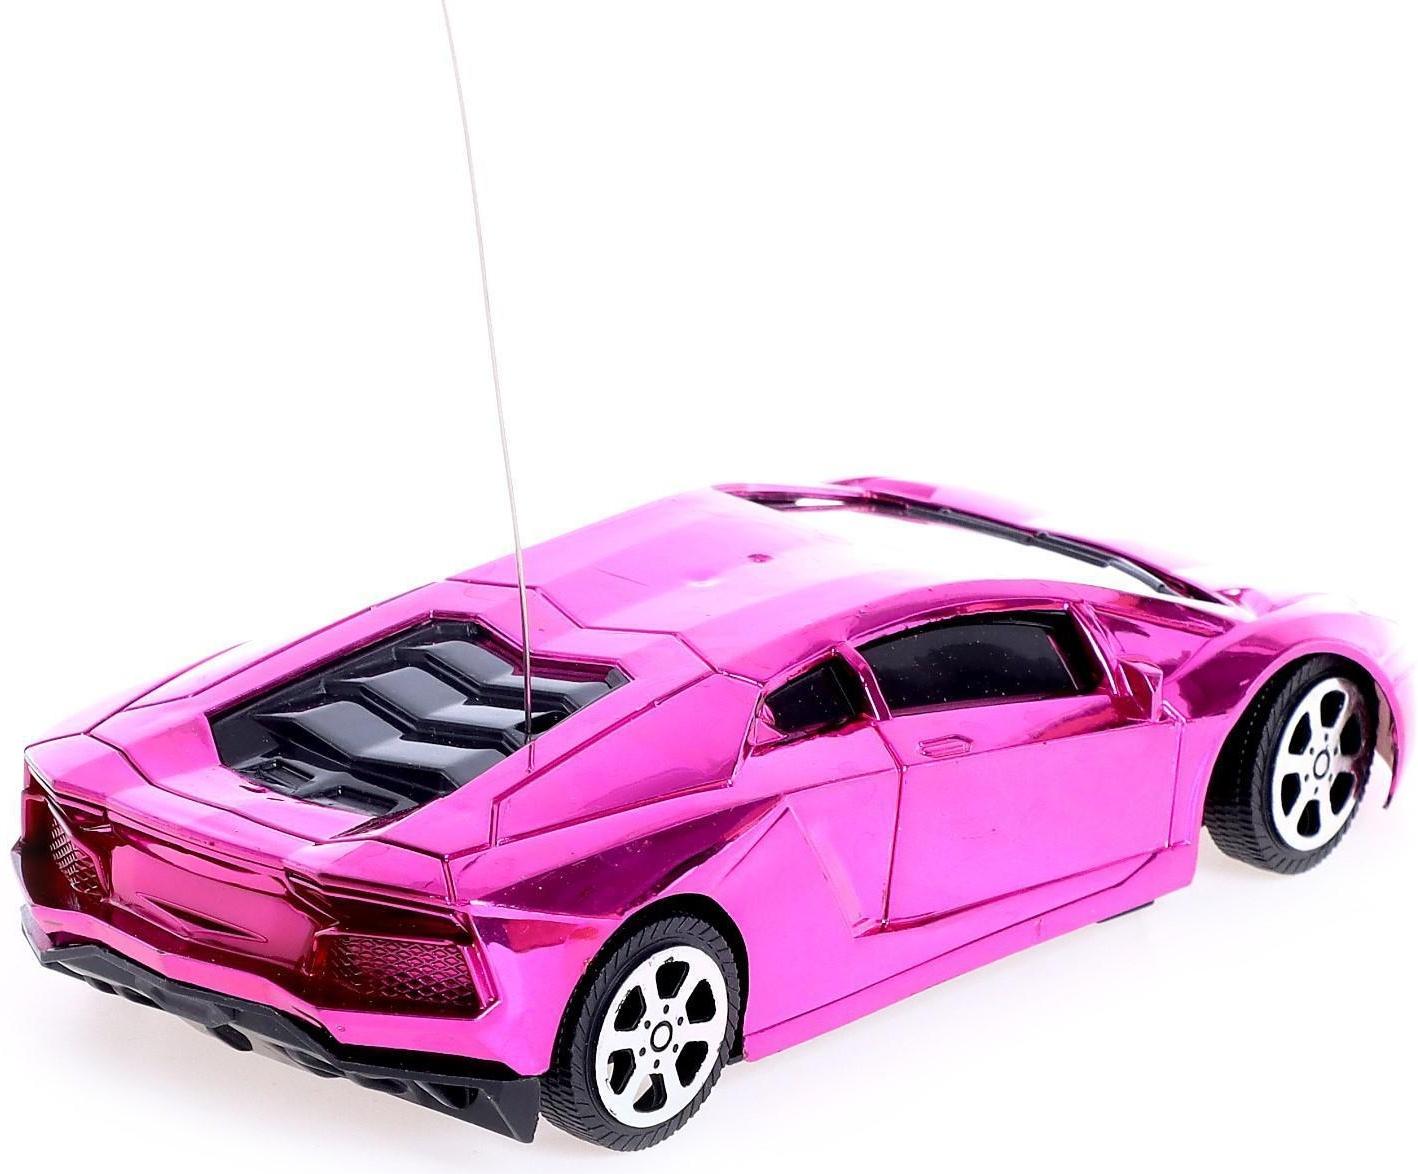 Машина радиоуправляемая «Шоукар», работает от батареек, цвет розовый